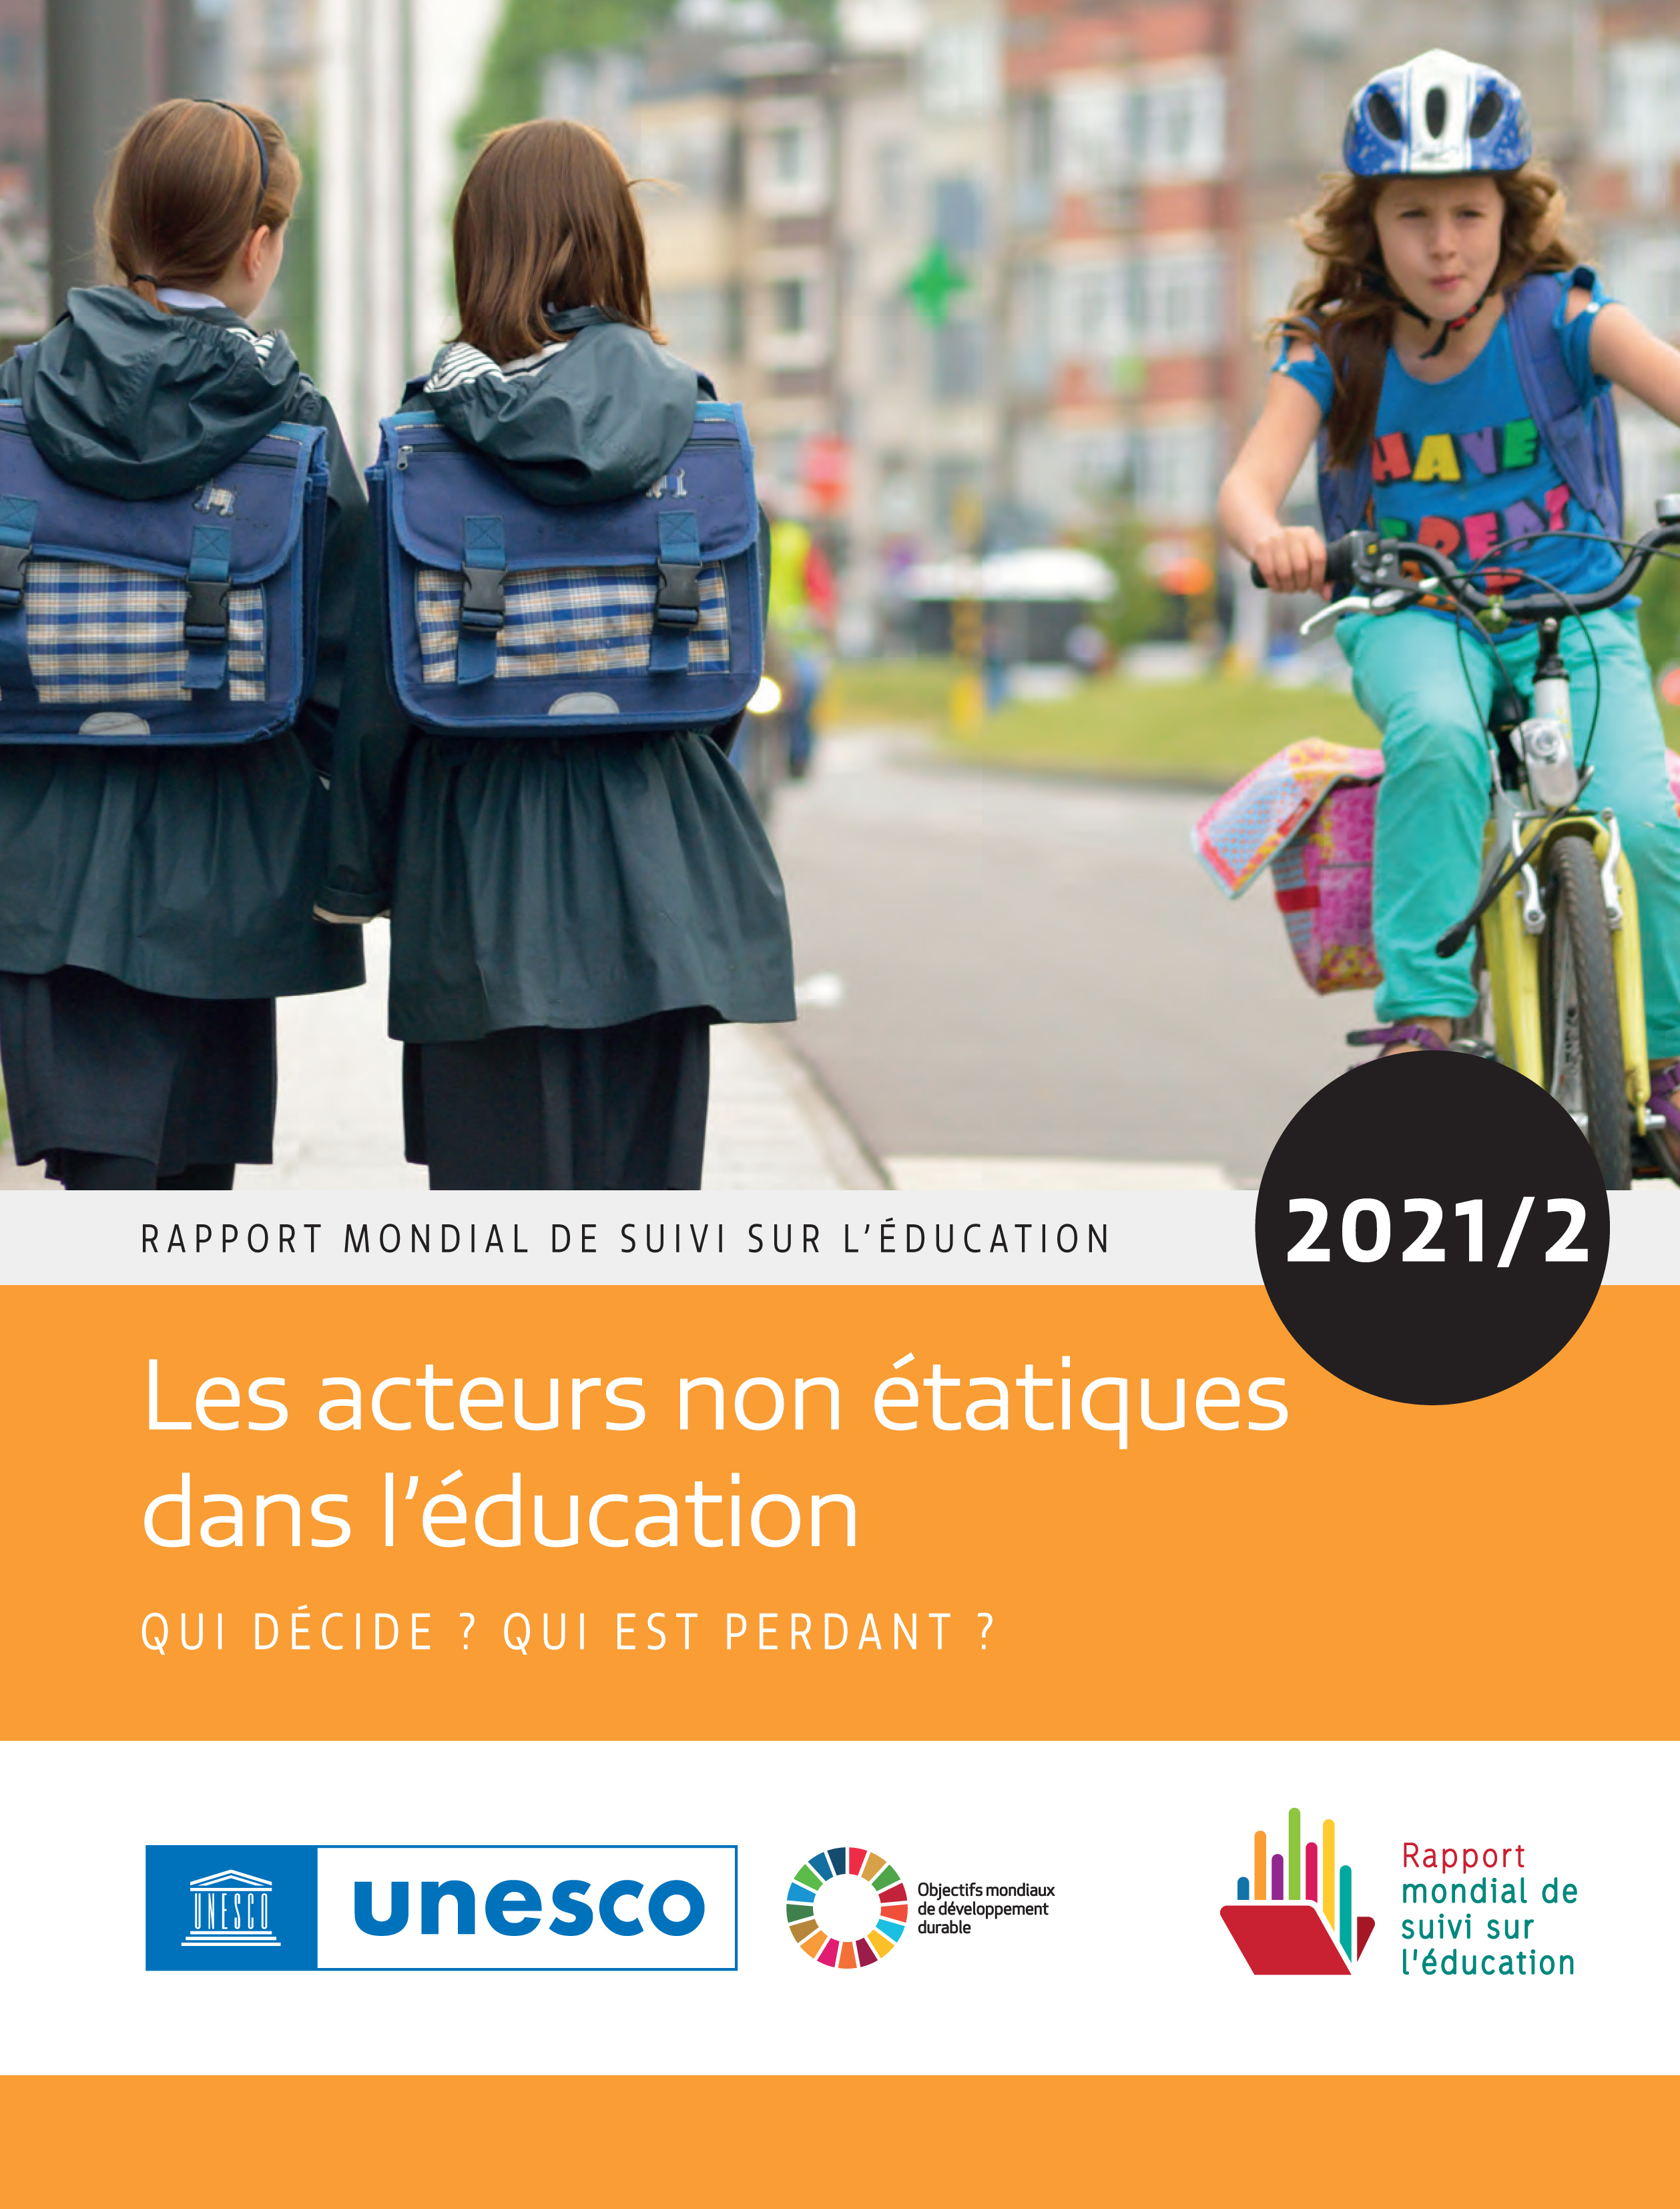 image of Rapport mondial de suivi sur l’éducation 2021/2